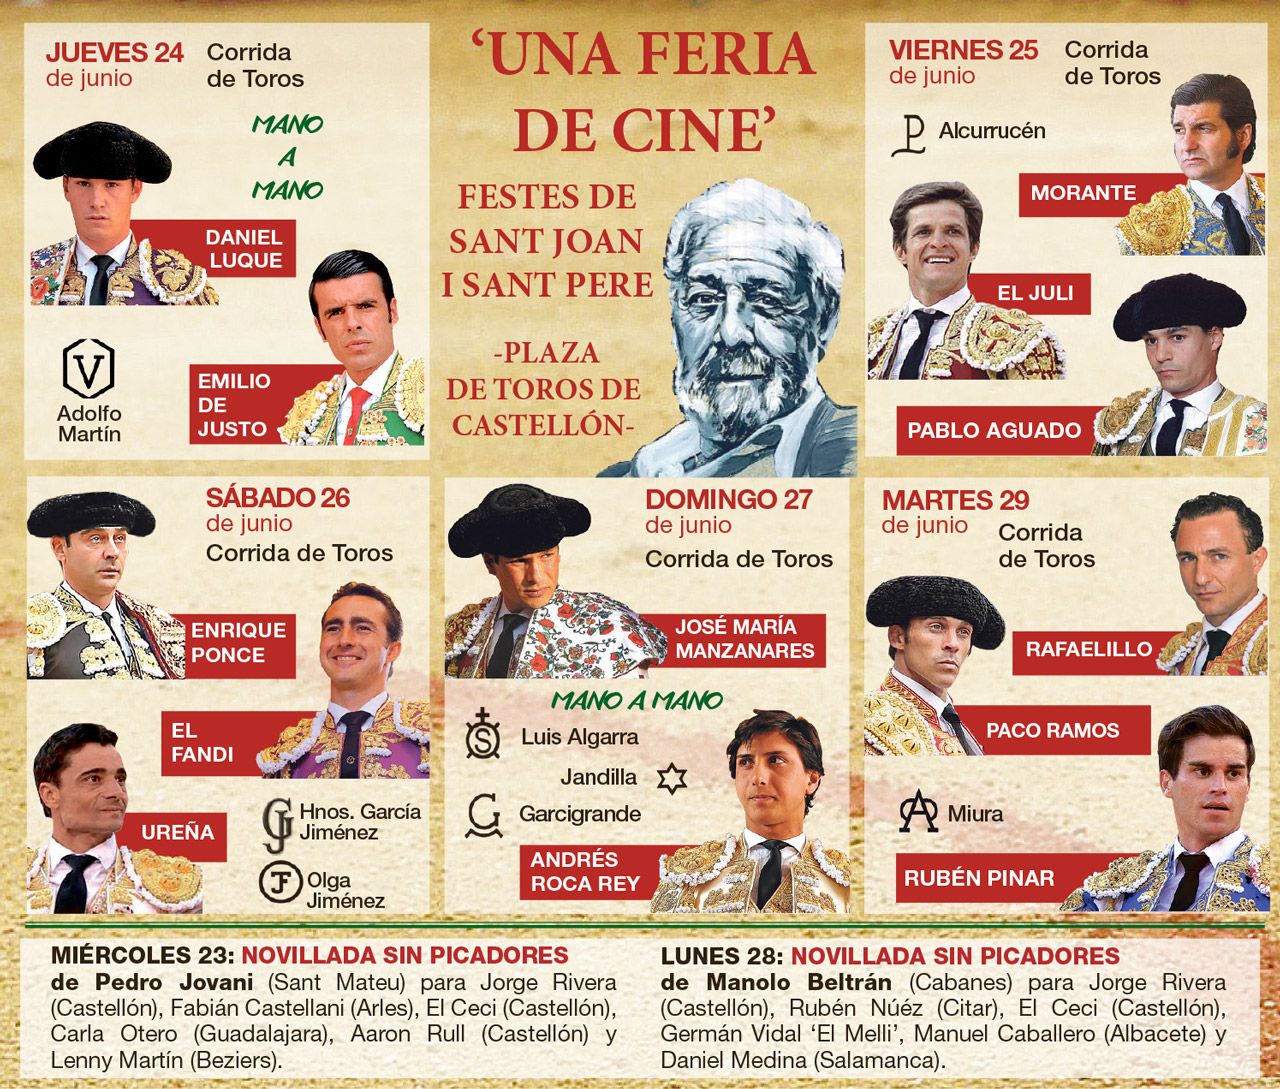 Cartel de la Feria de junio con todas las figuras del momento, los toreros revelación y las mejores ganaderías.